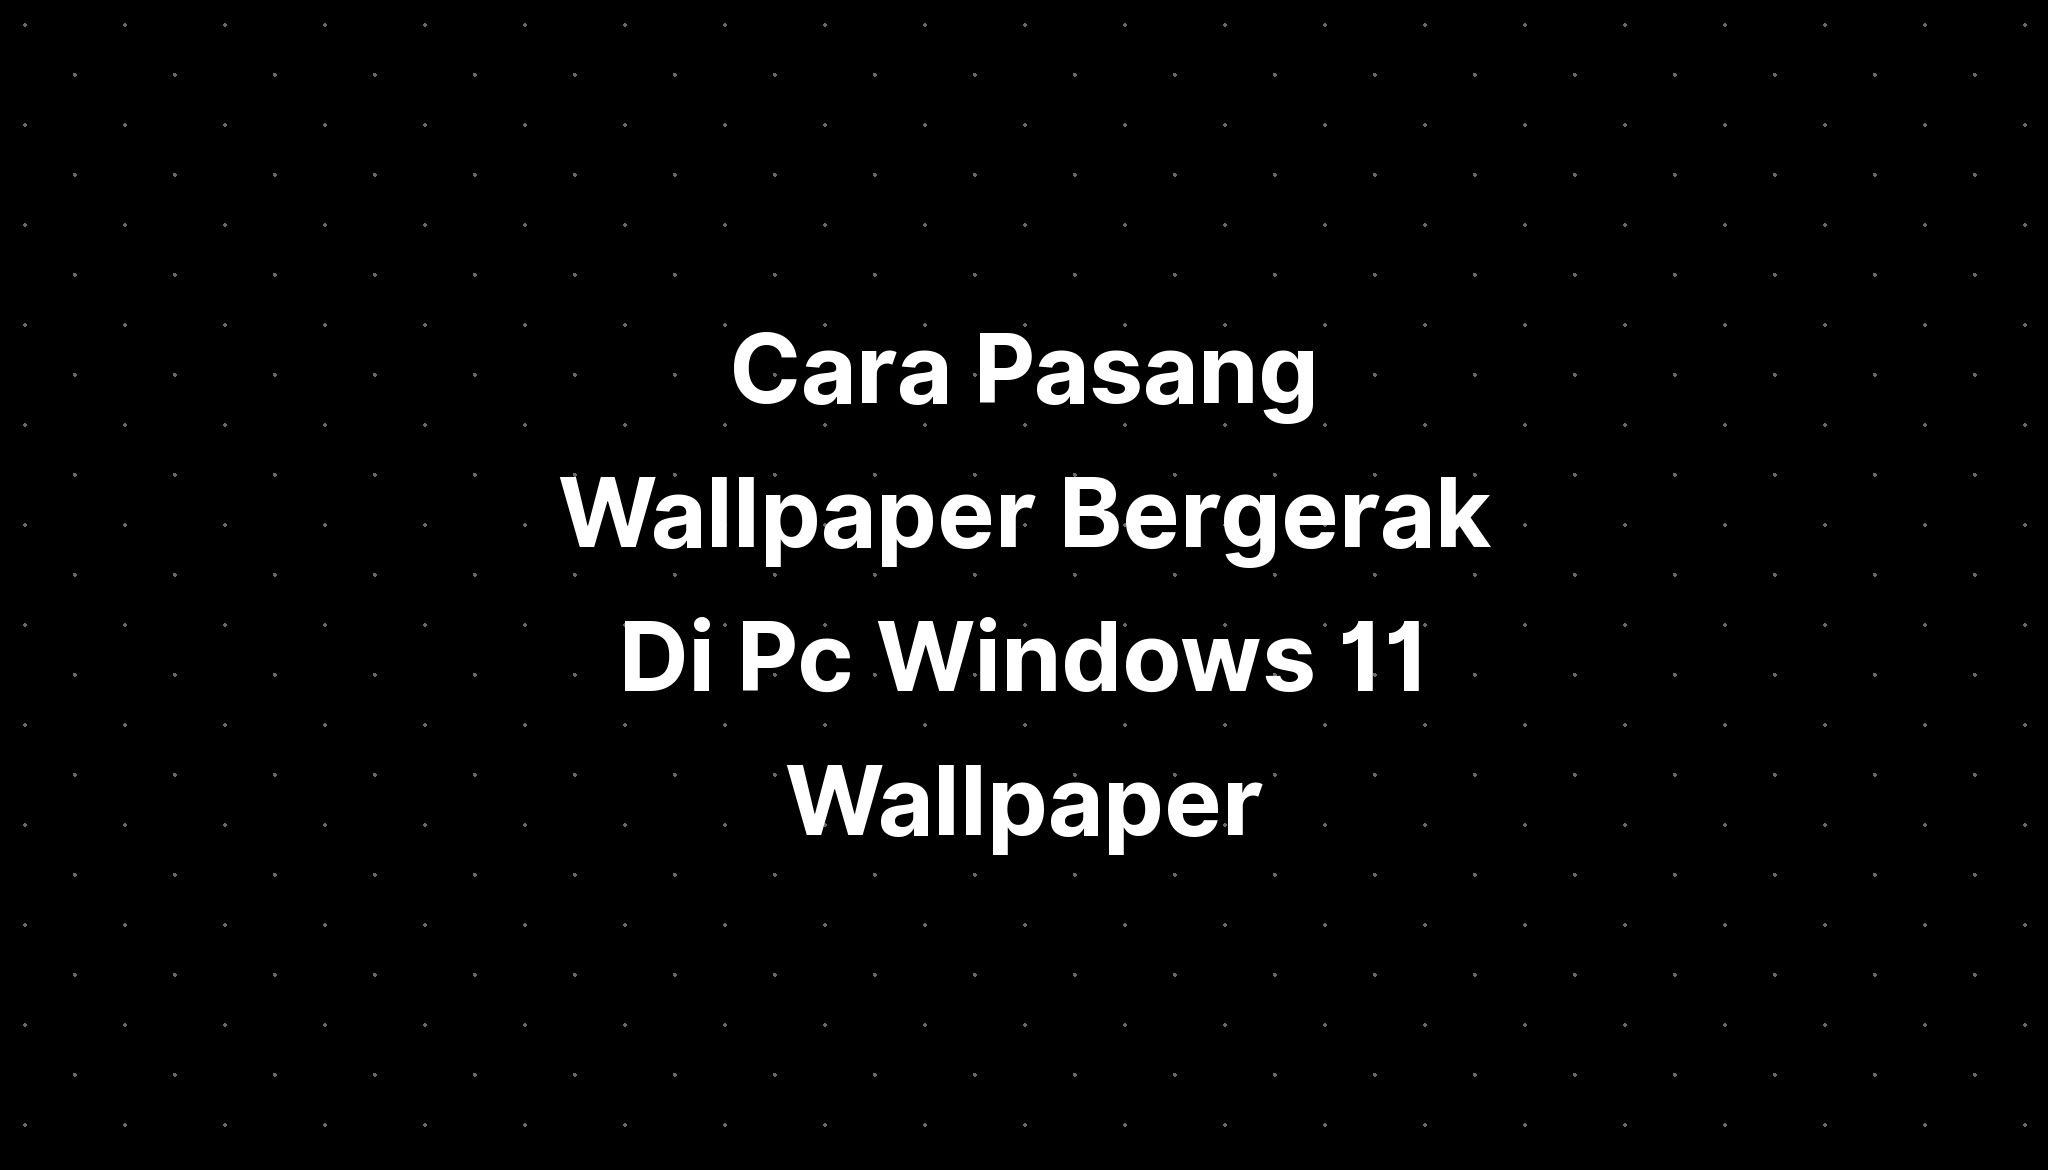 Cara Pasang Wallpaper Bergerak Di Pc Windows 11 Wallpaper - IMAGESEE